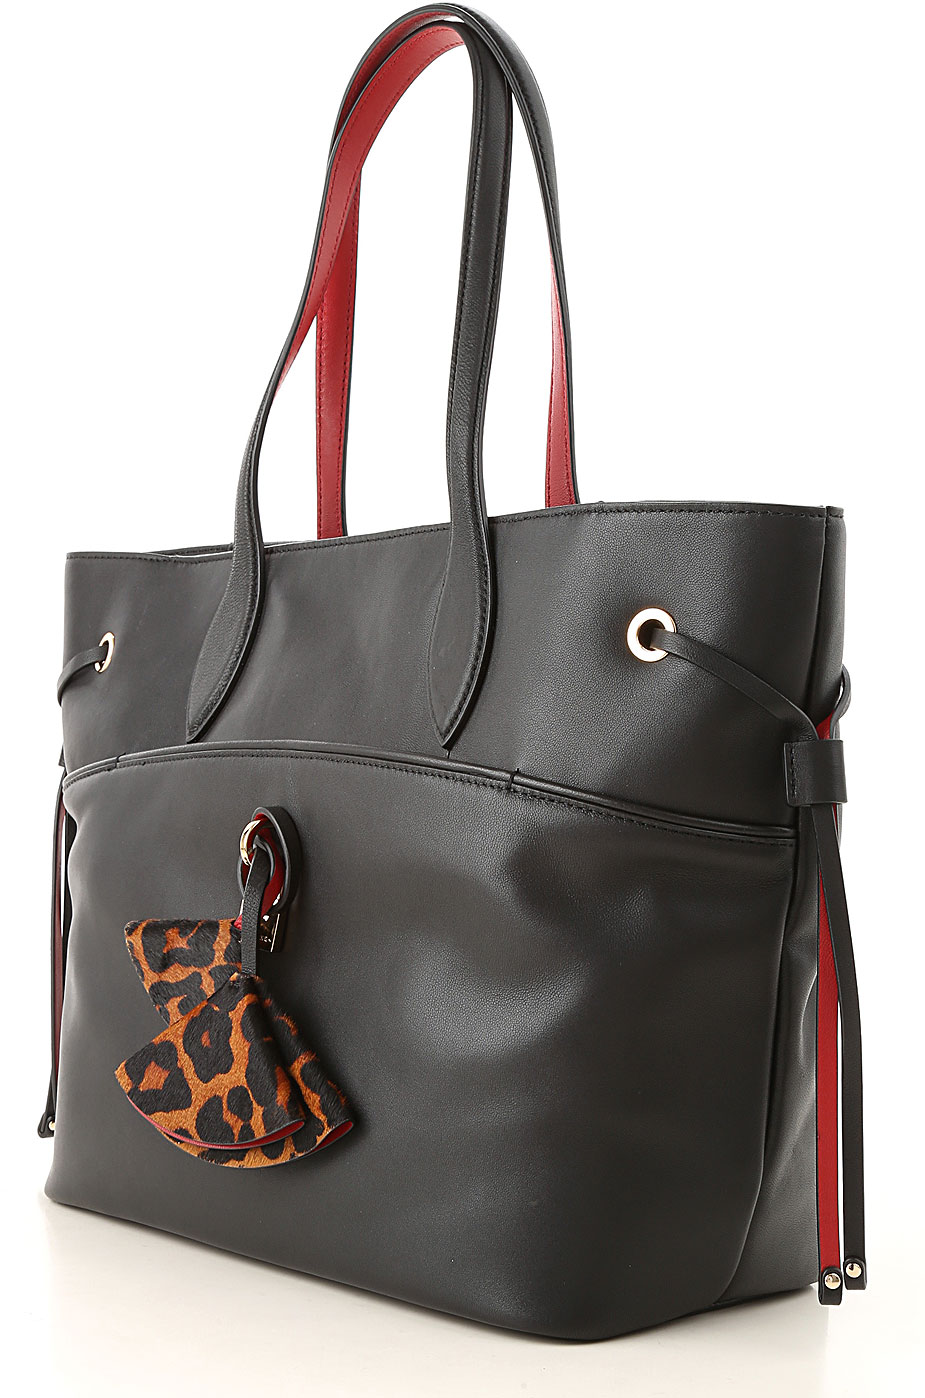 GUESS Handbags : Bags & Accessories - Walmart.com